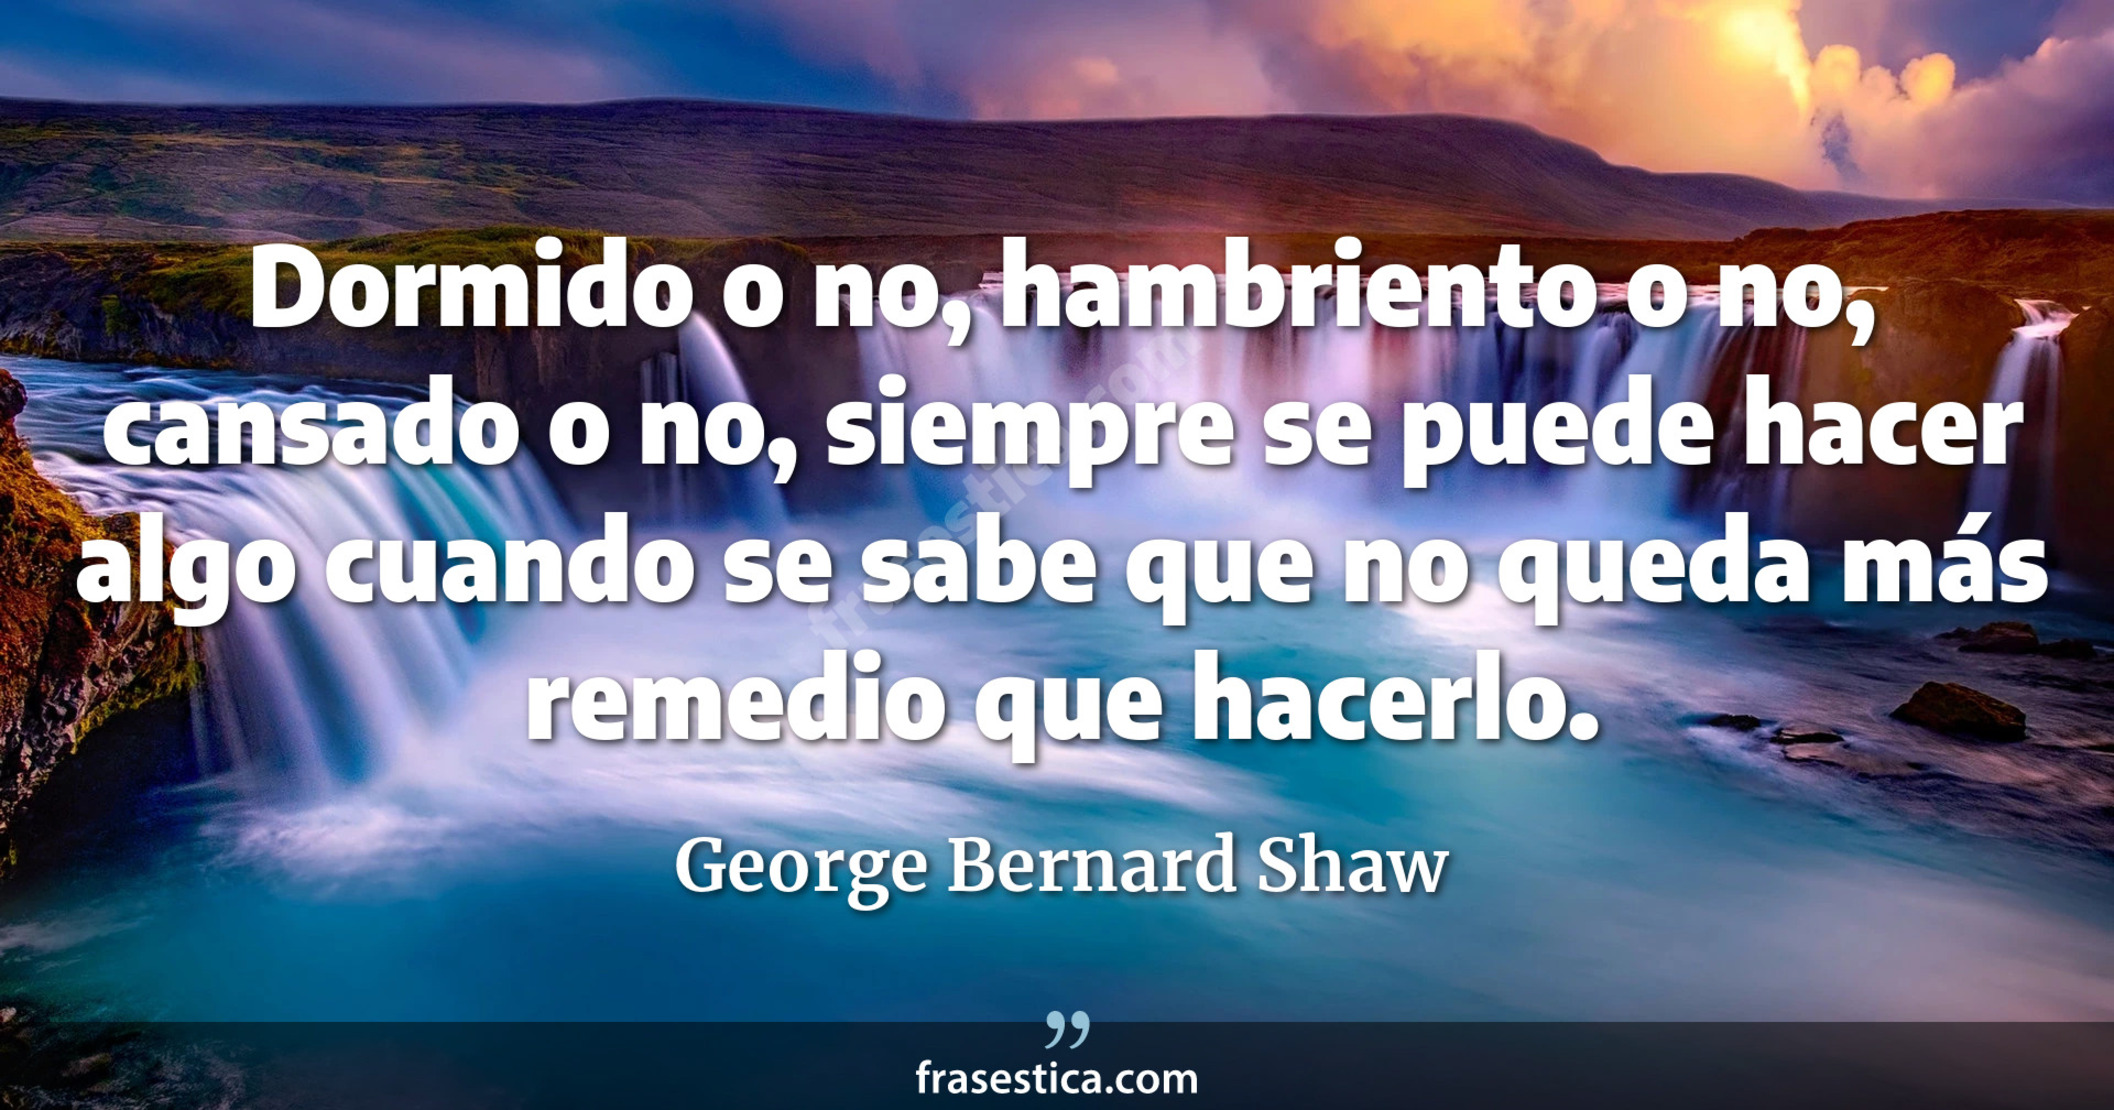 Dormido o no, hambriento o no, cansado o no, siempre se puede hacer algo cuando se sabe que no queda más remedio que hacerlo. - George Bernard Shaw